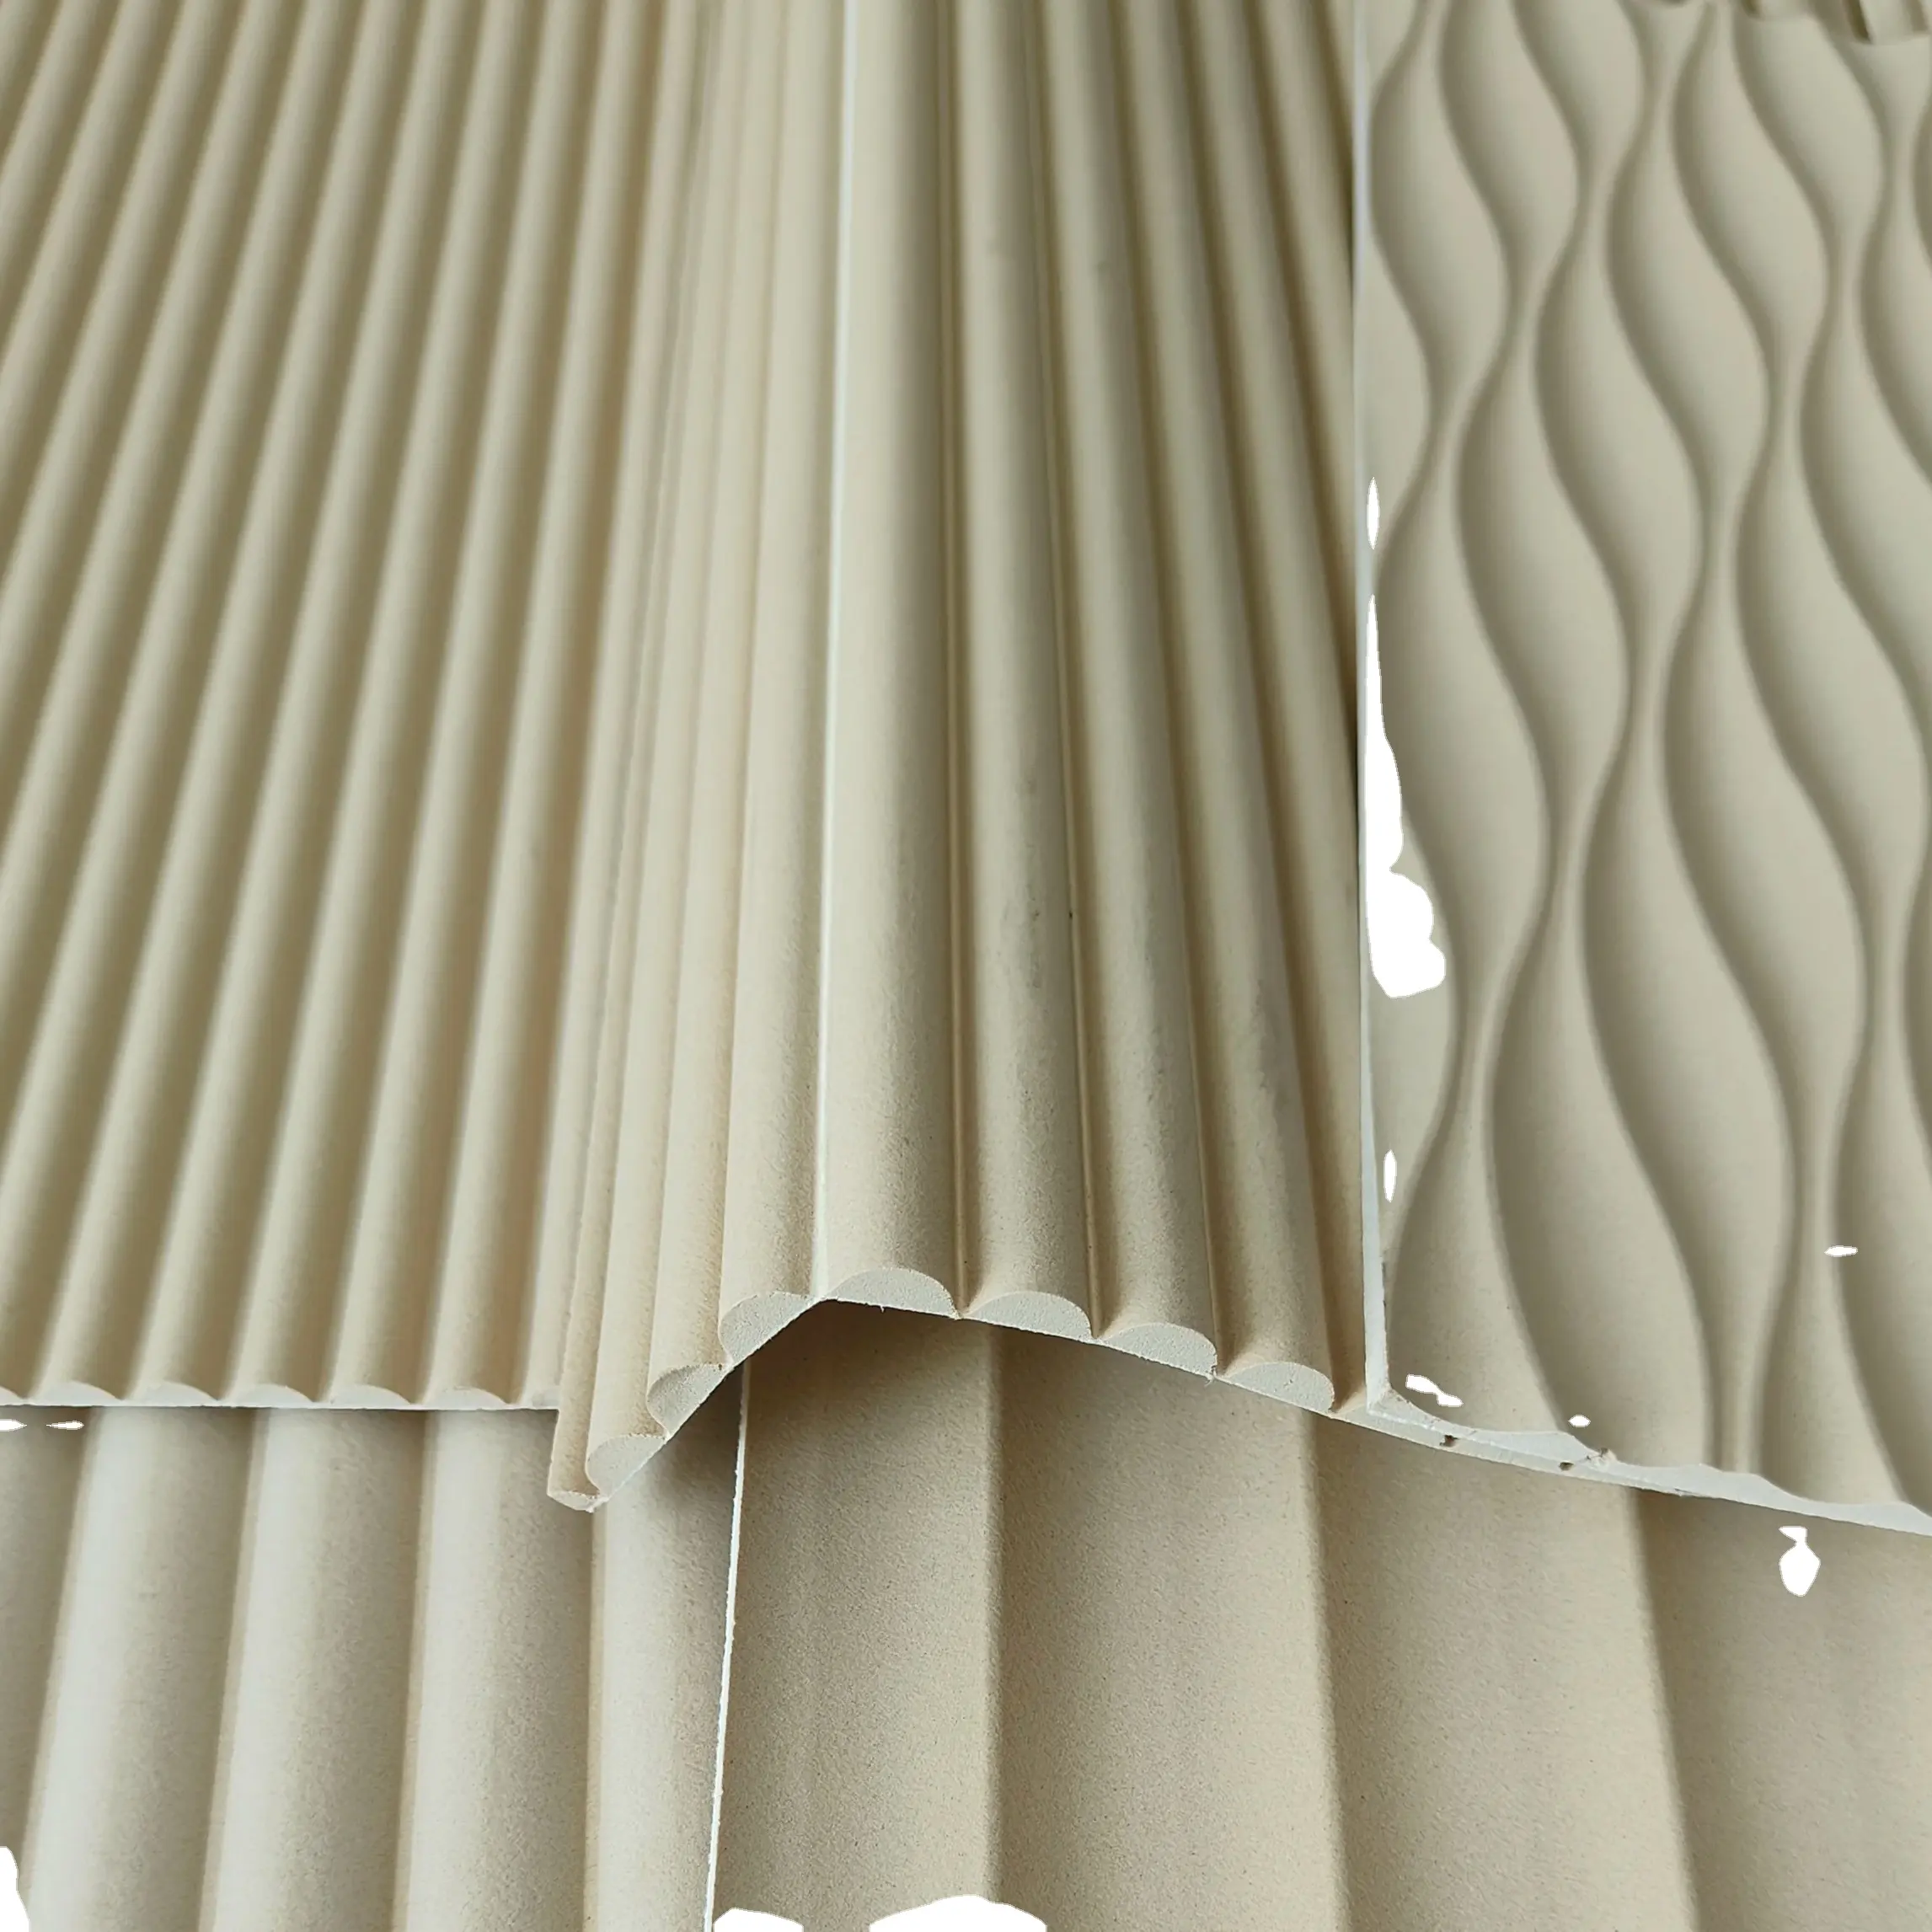 BAIYI Factory Soft Wall Panel Gebogene flexible gebogene 3D-MDF-Platte gerippte MDF/HDF-Platten für die Innenausstattung